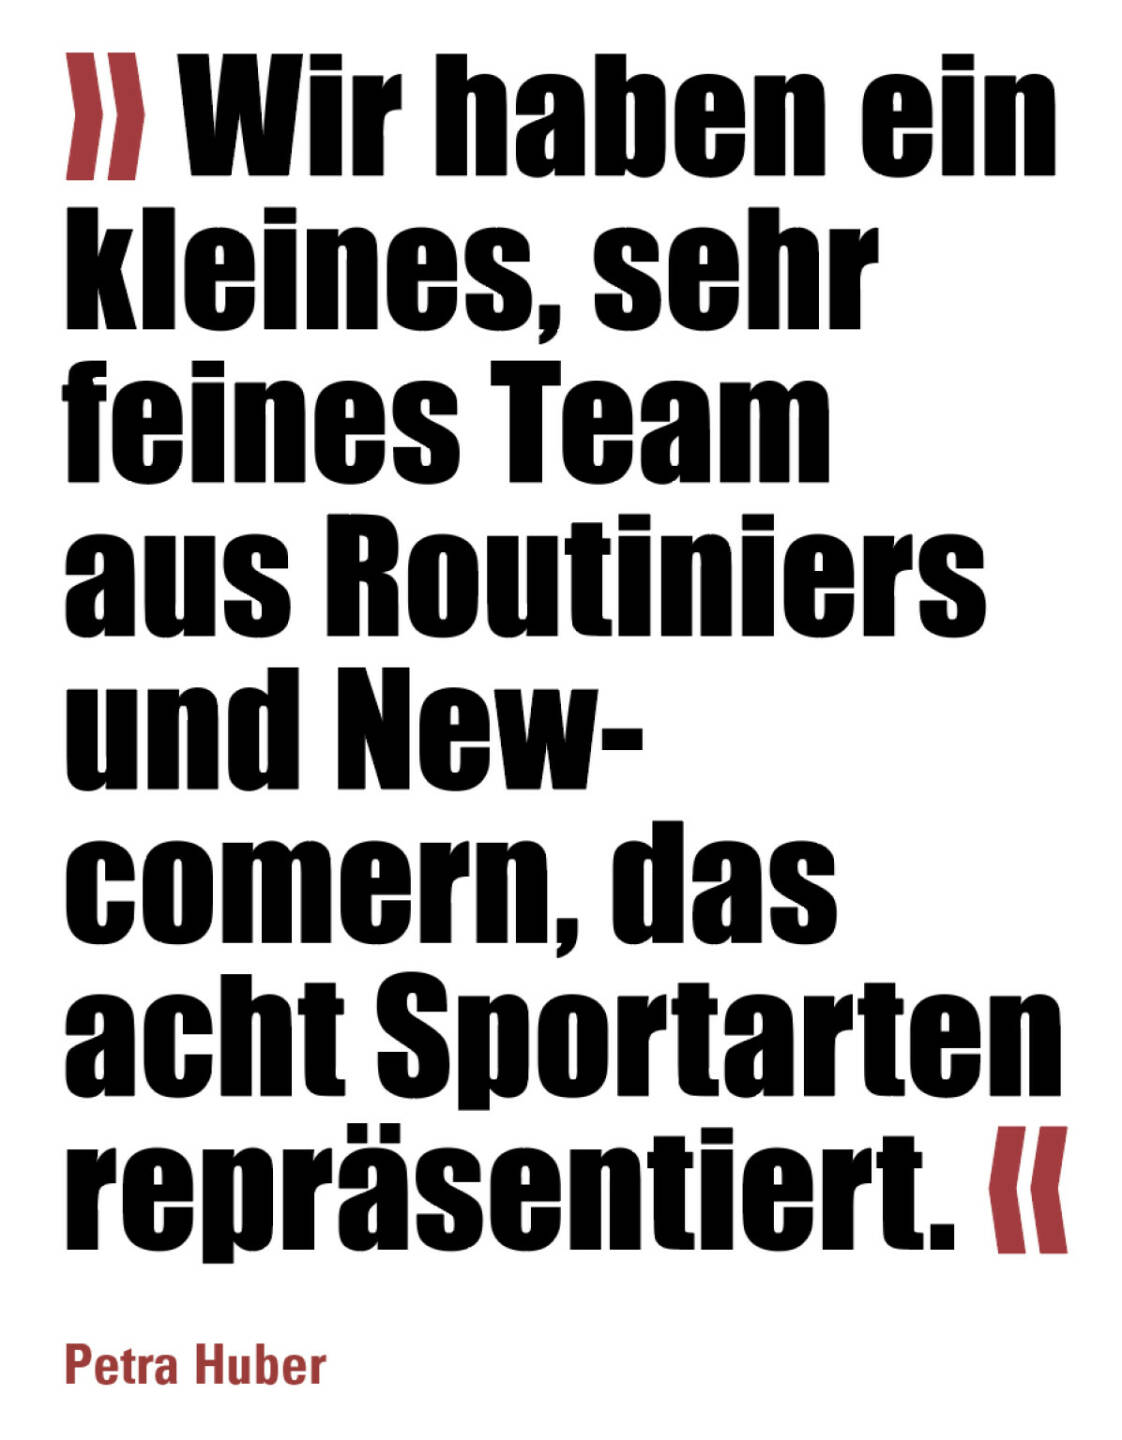 » Wir haben ein kleines, sehr feines Team aus Routiniers und New-comern, das acht Sportarten repräsentiert. «
Petra Huber